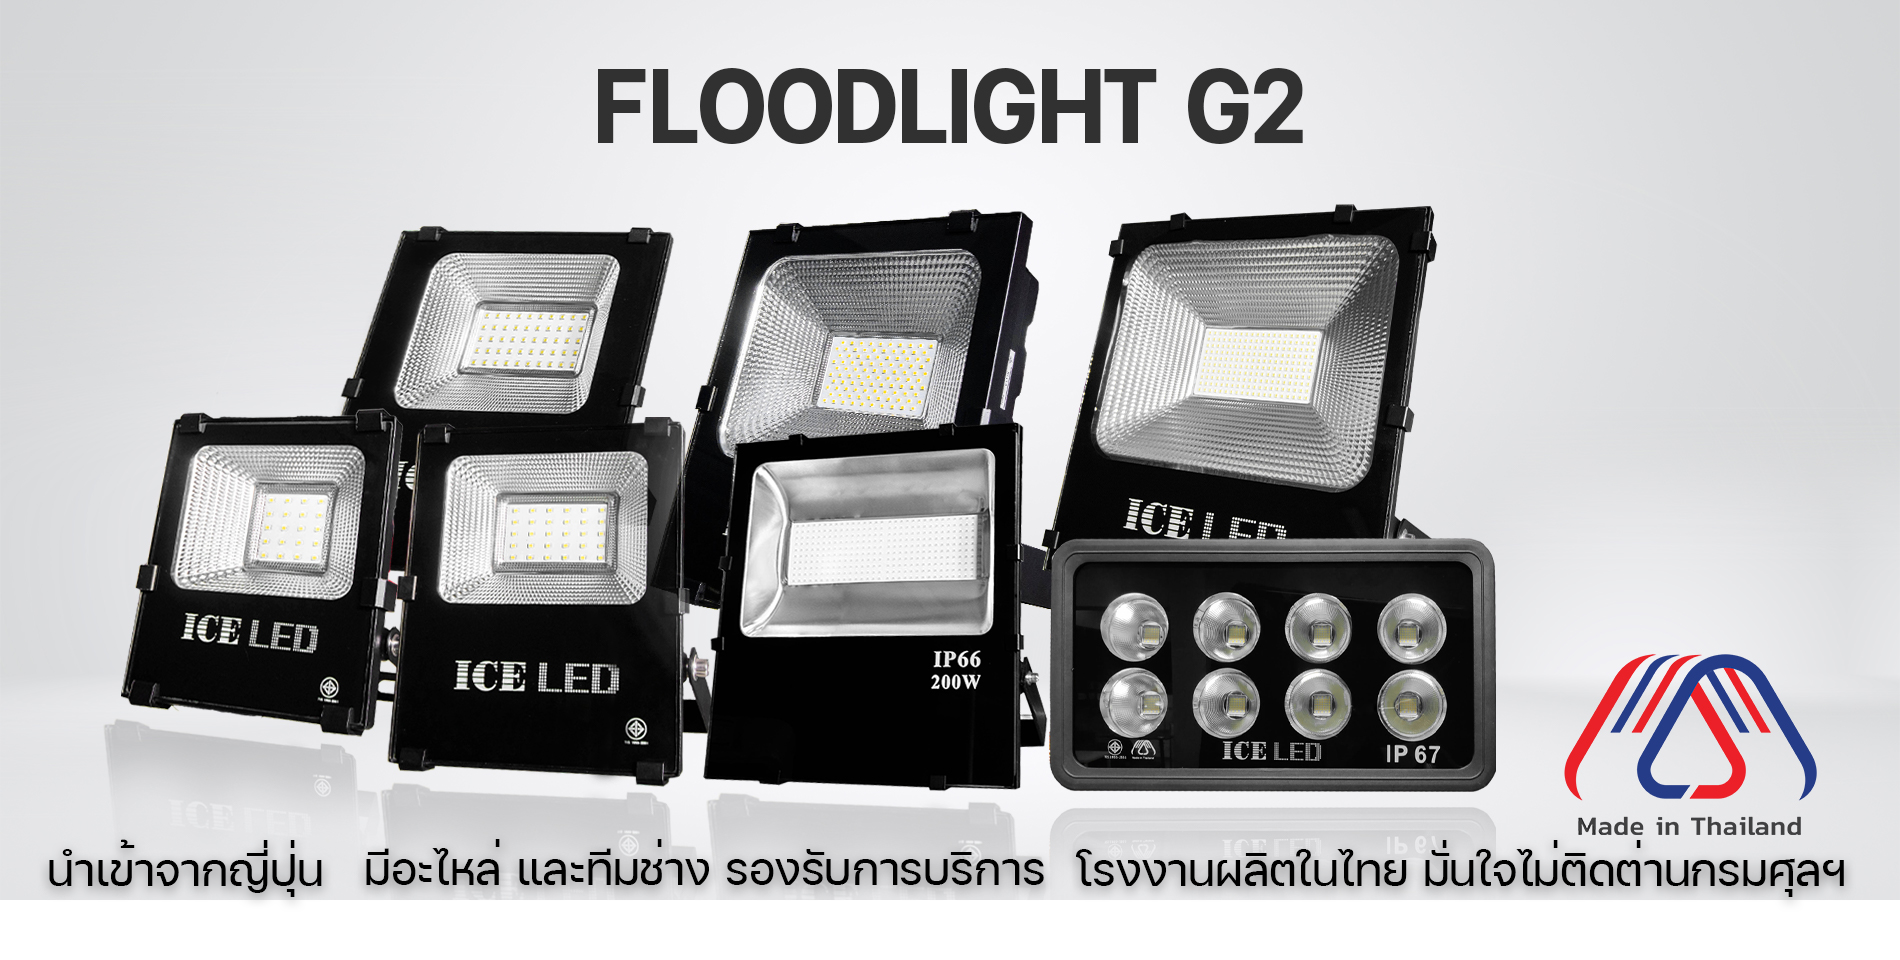 1 FLOODLIGHT G2